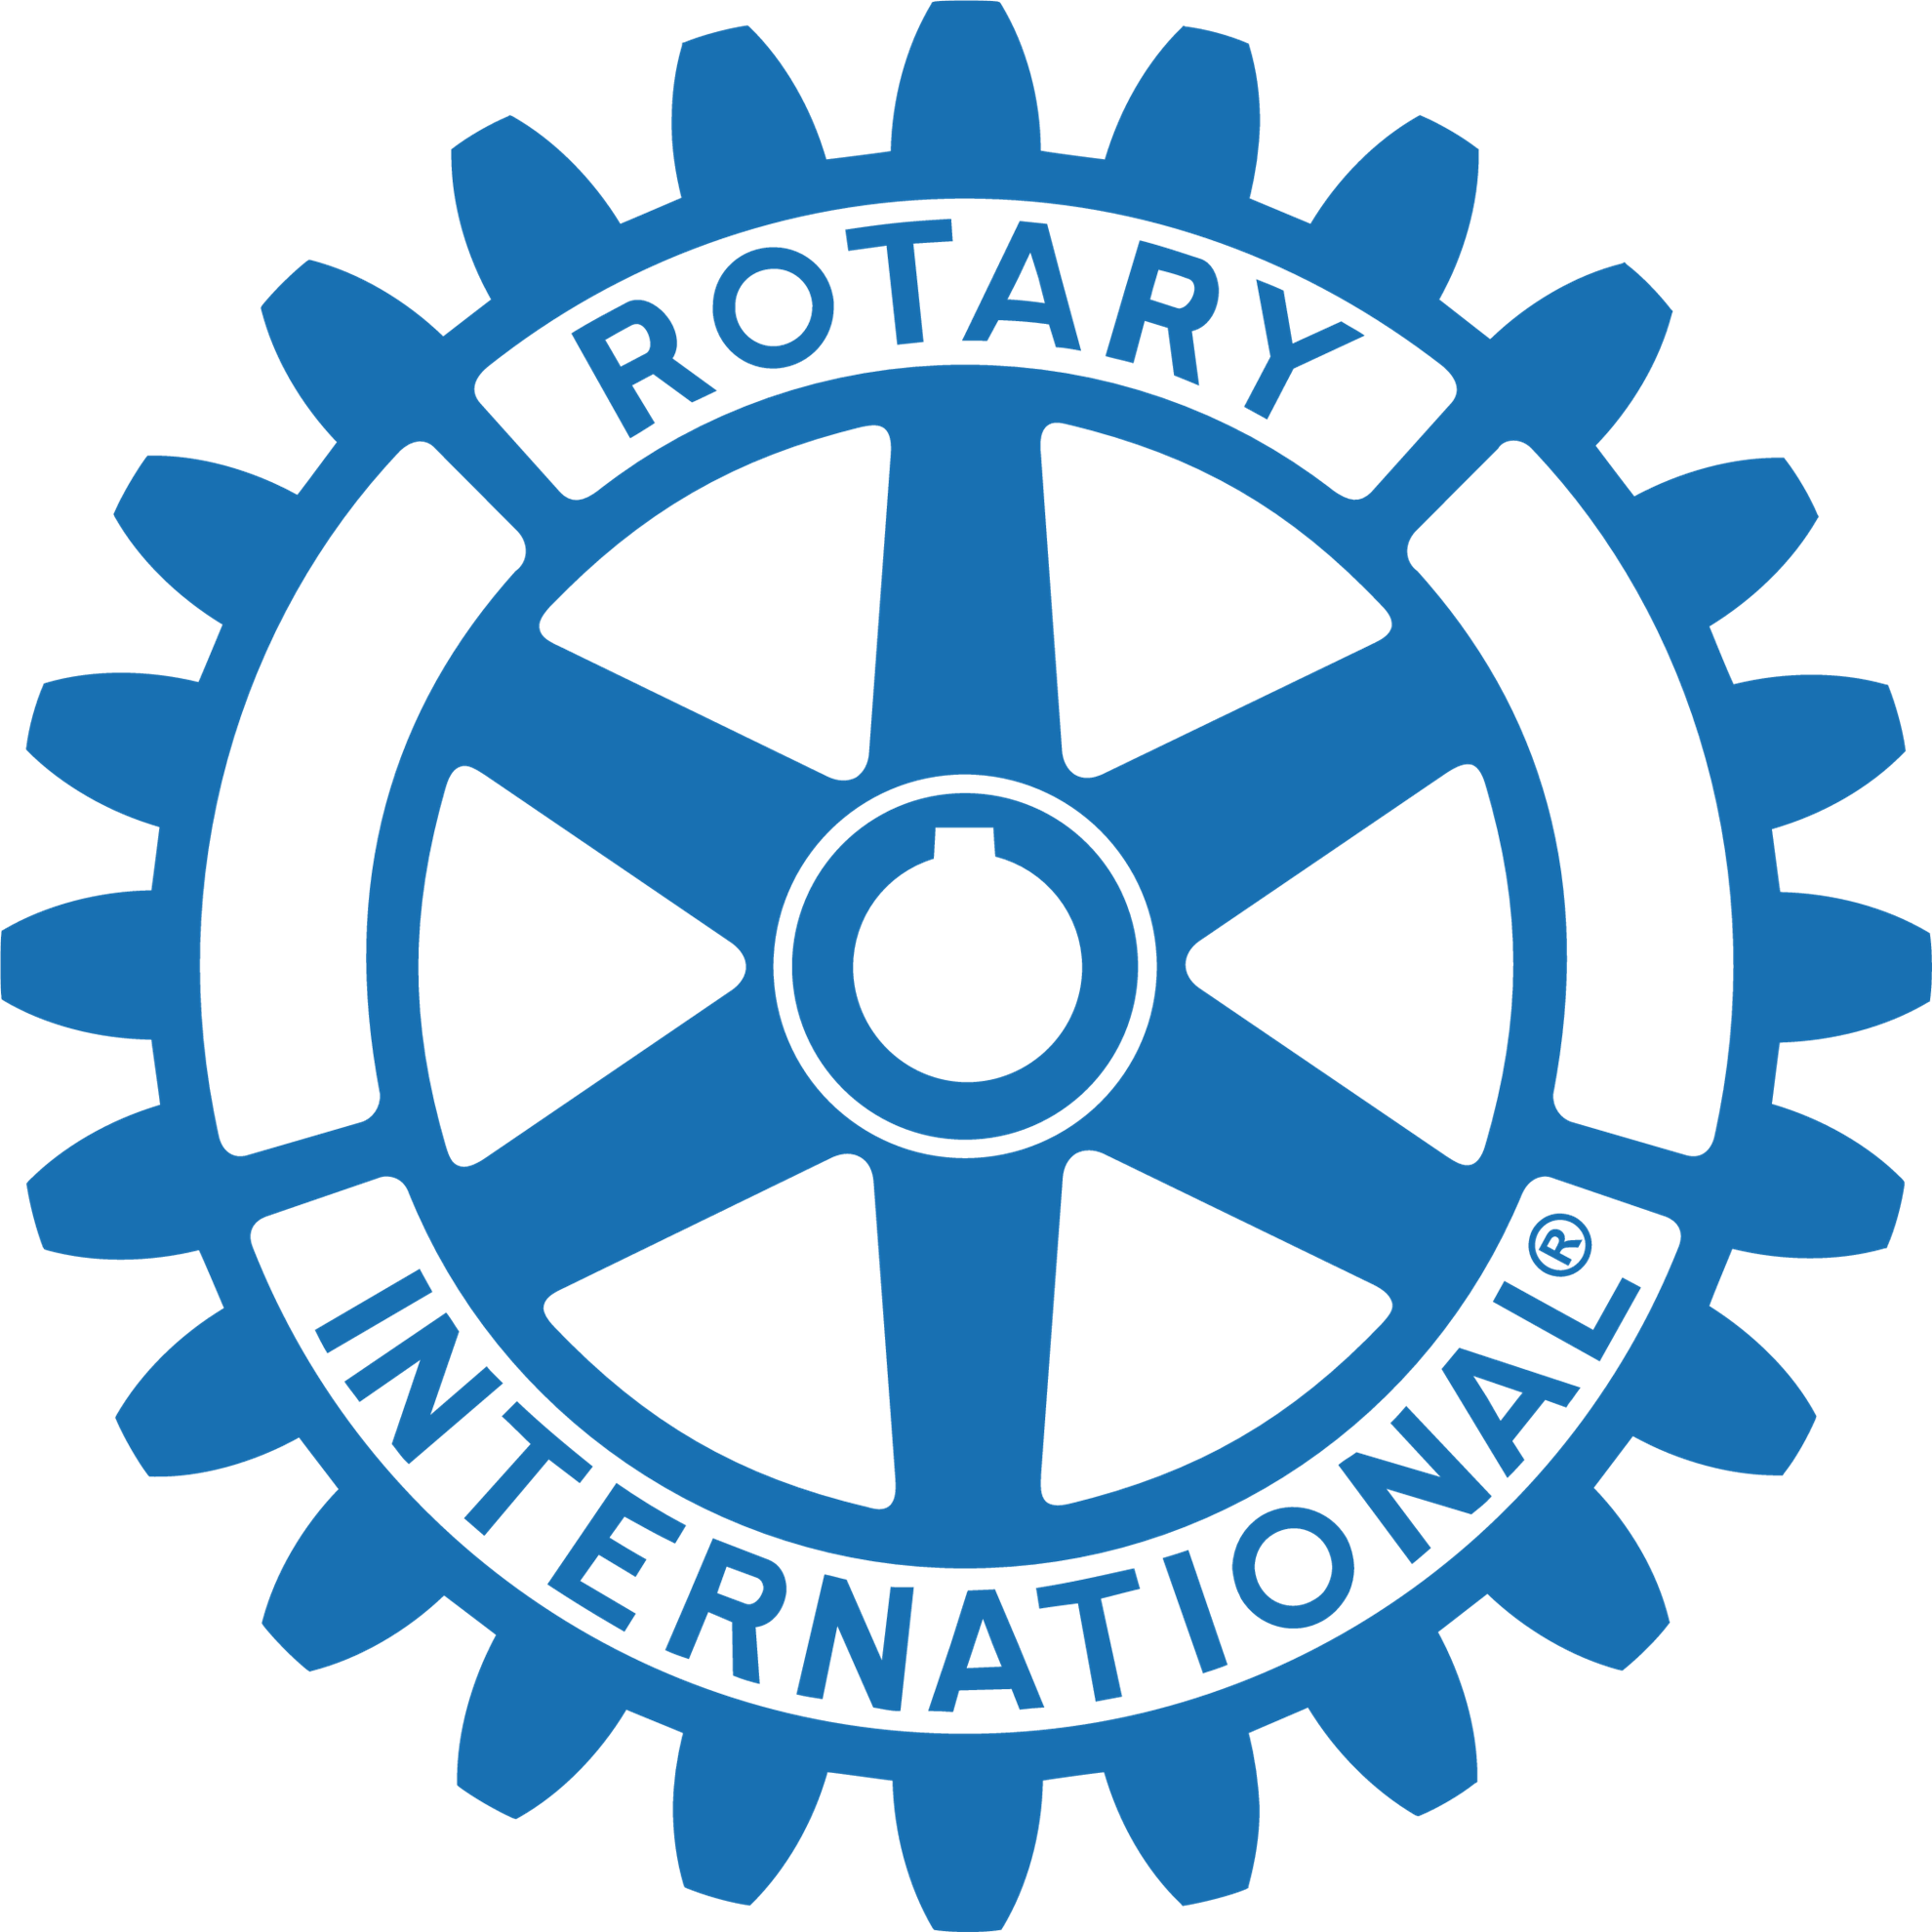 Fort Wayne logo